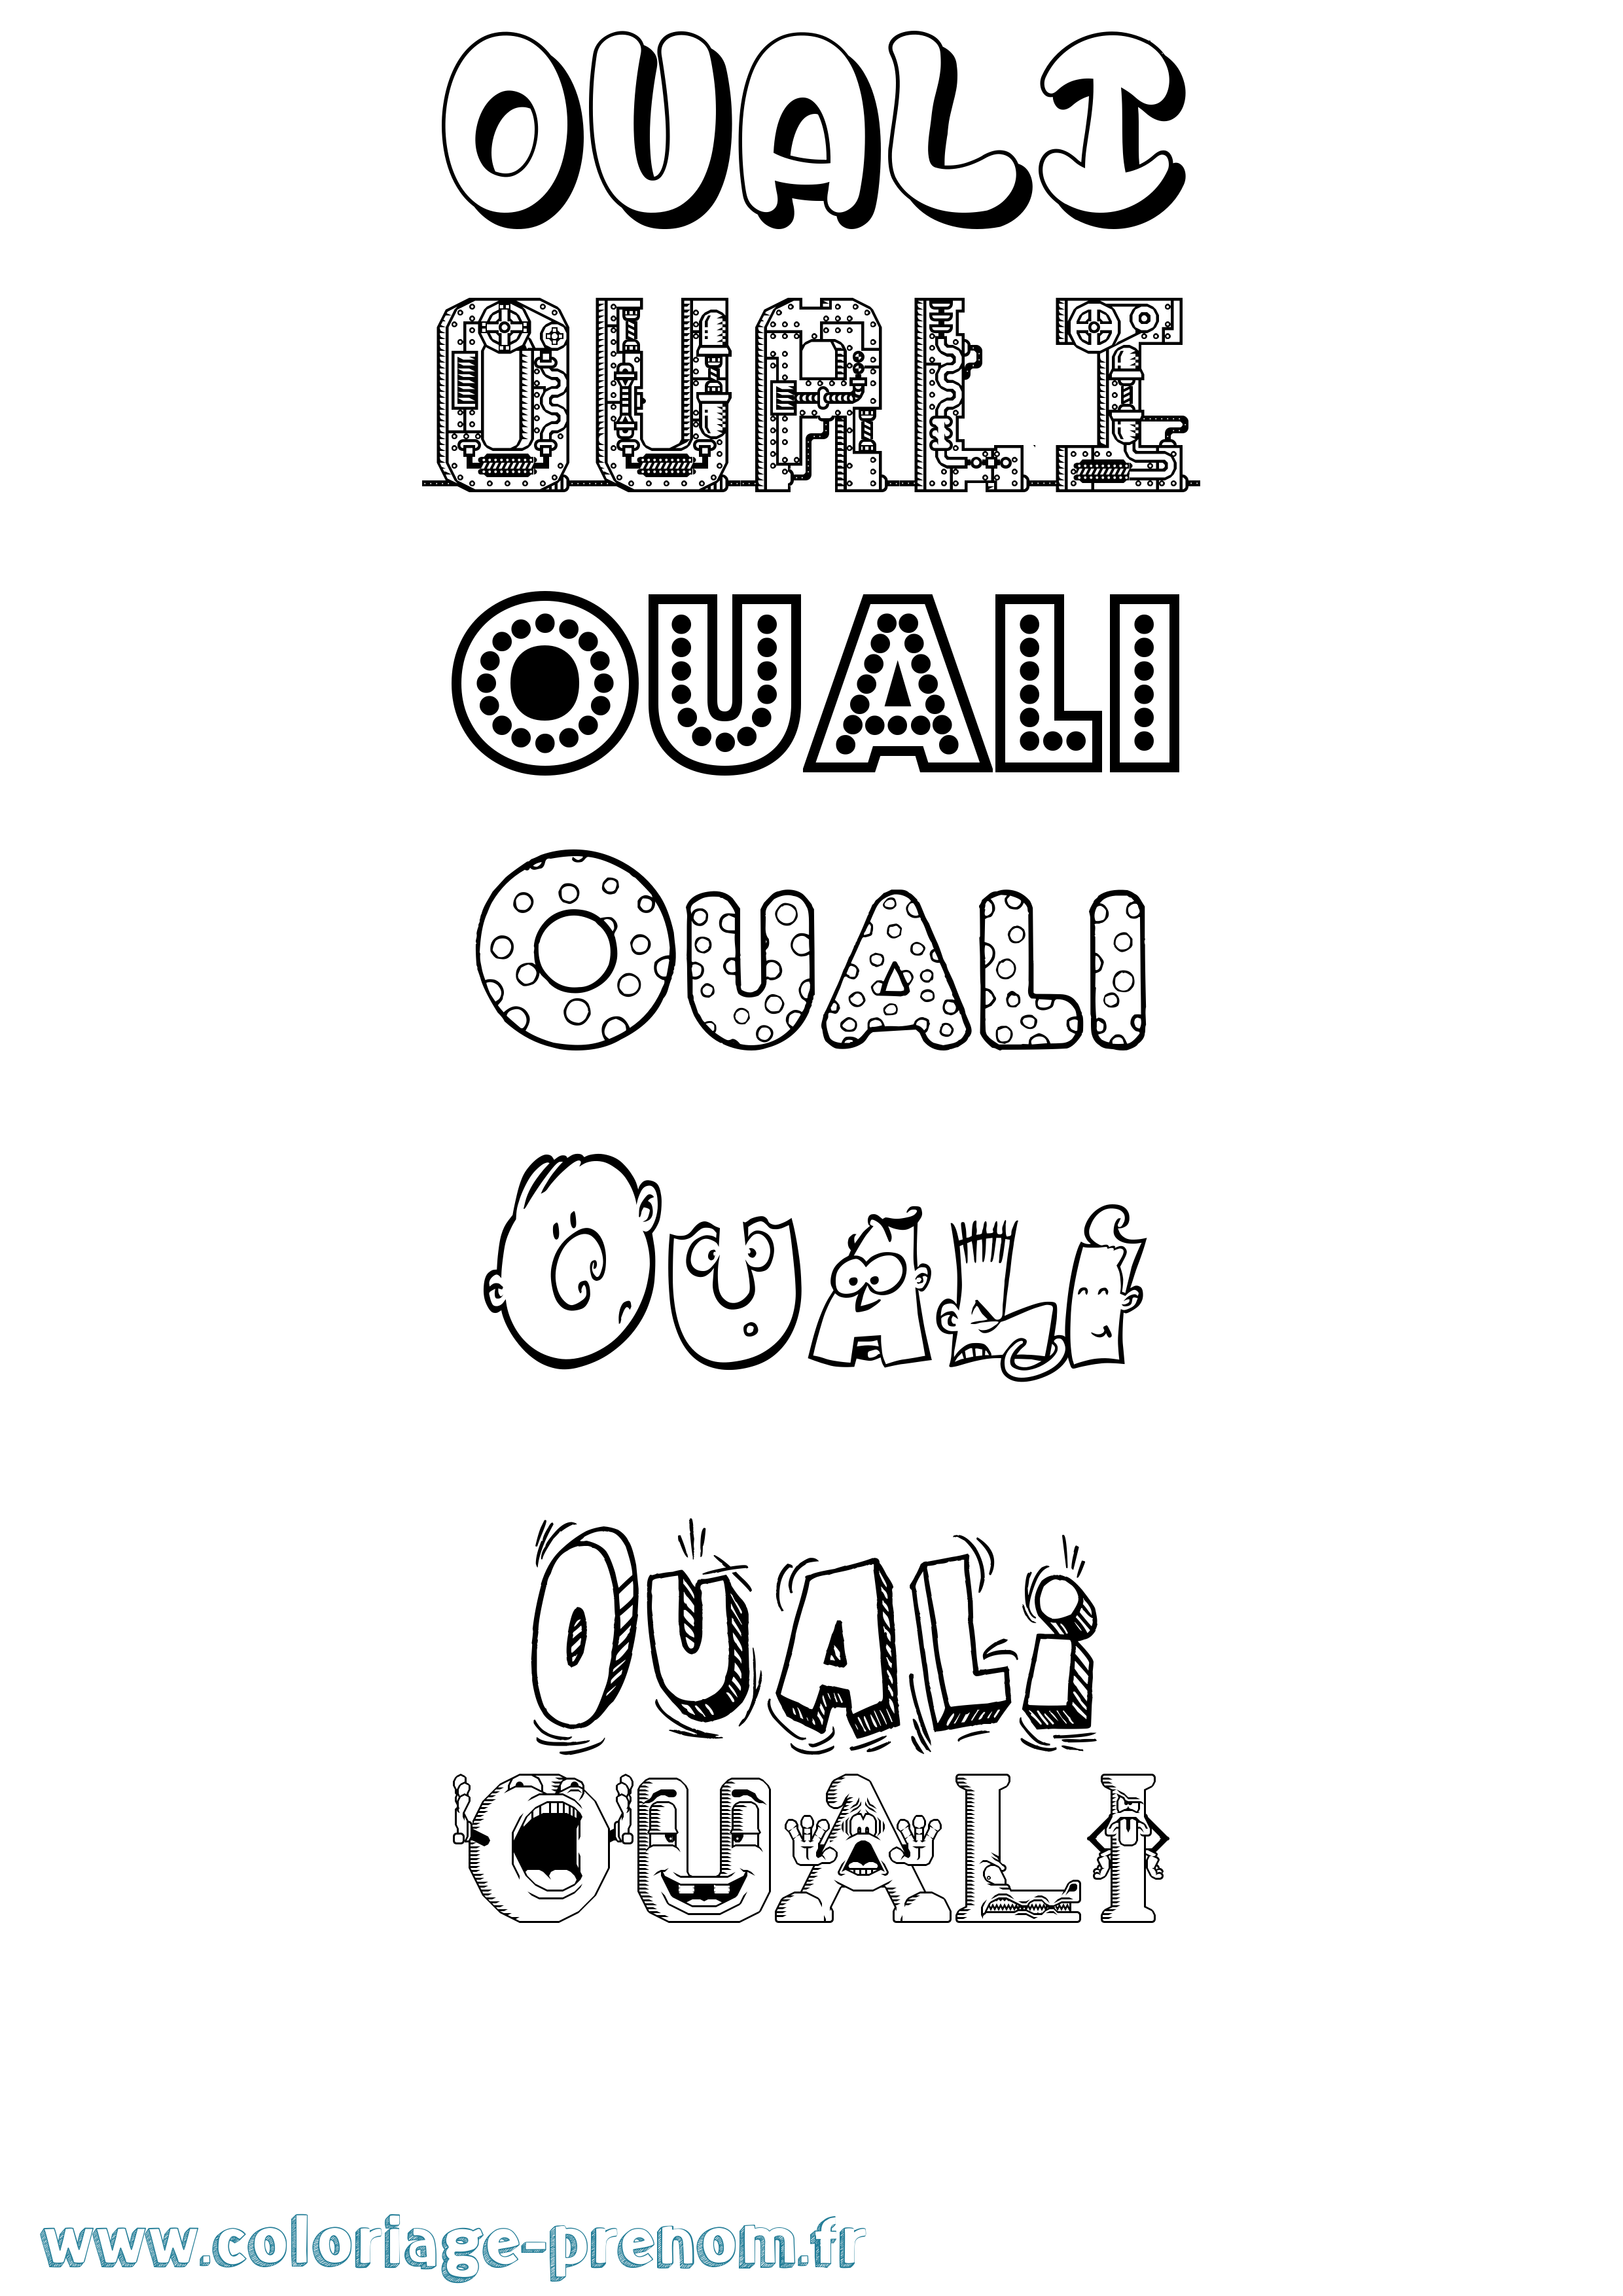 Coloriage prénom Ouali Fun